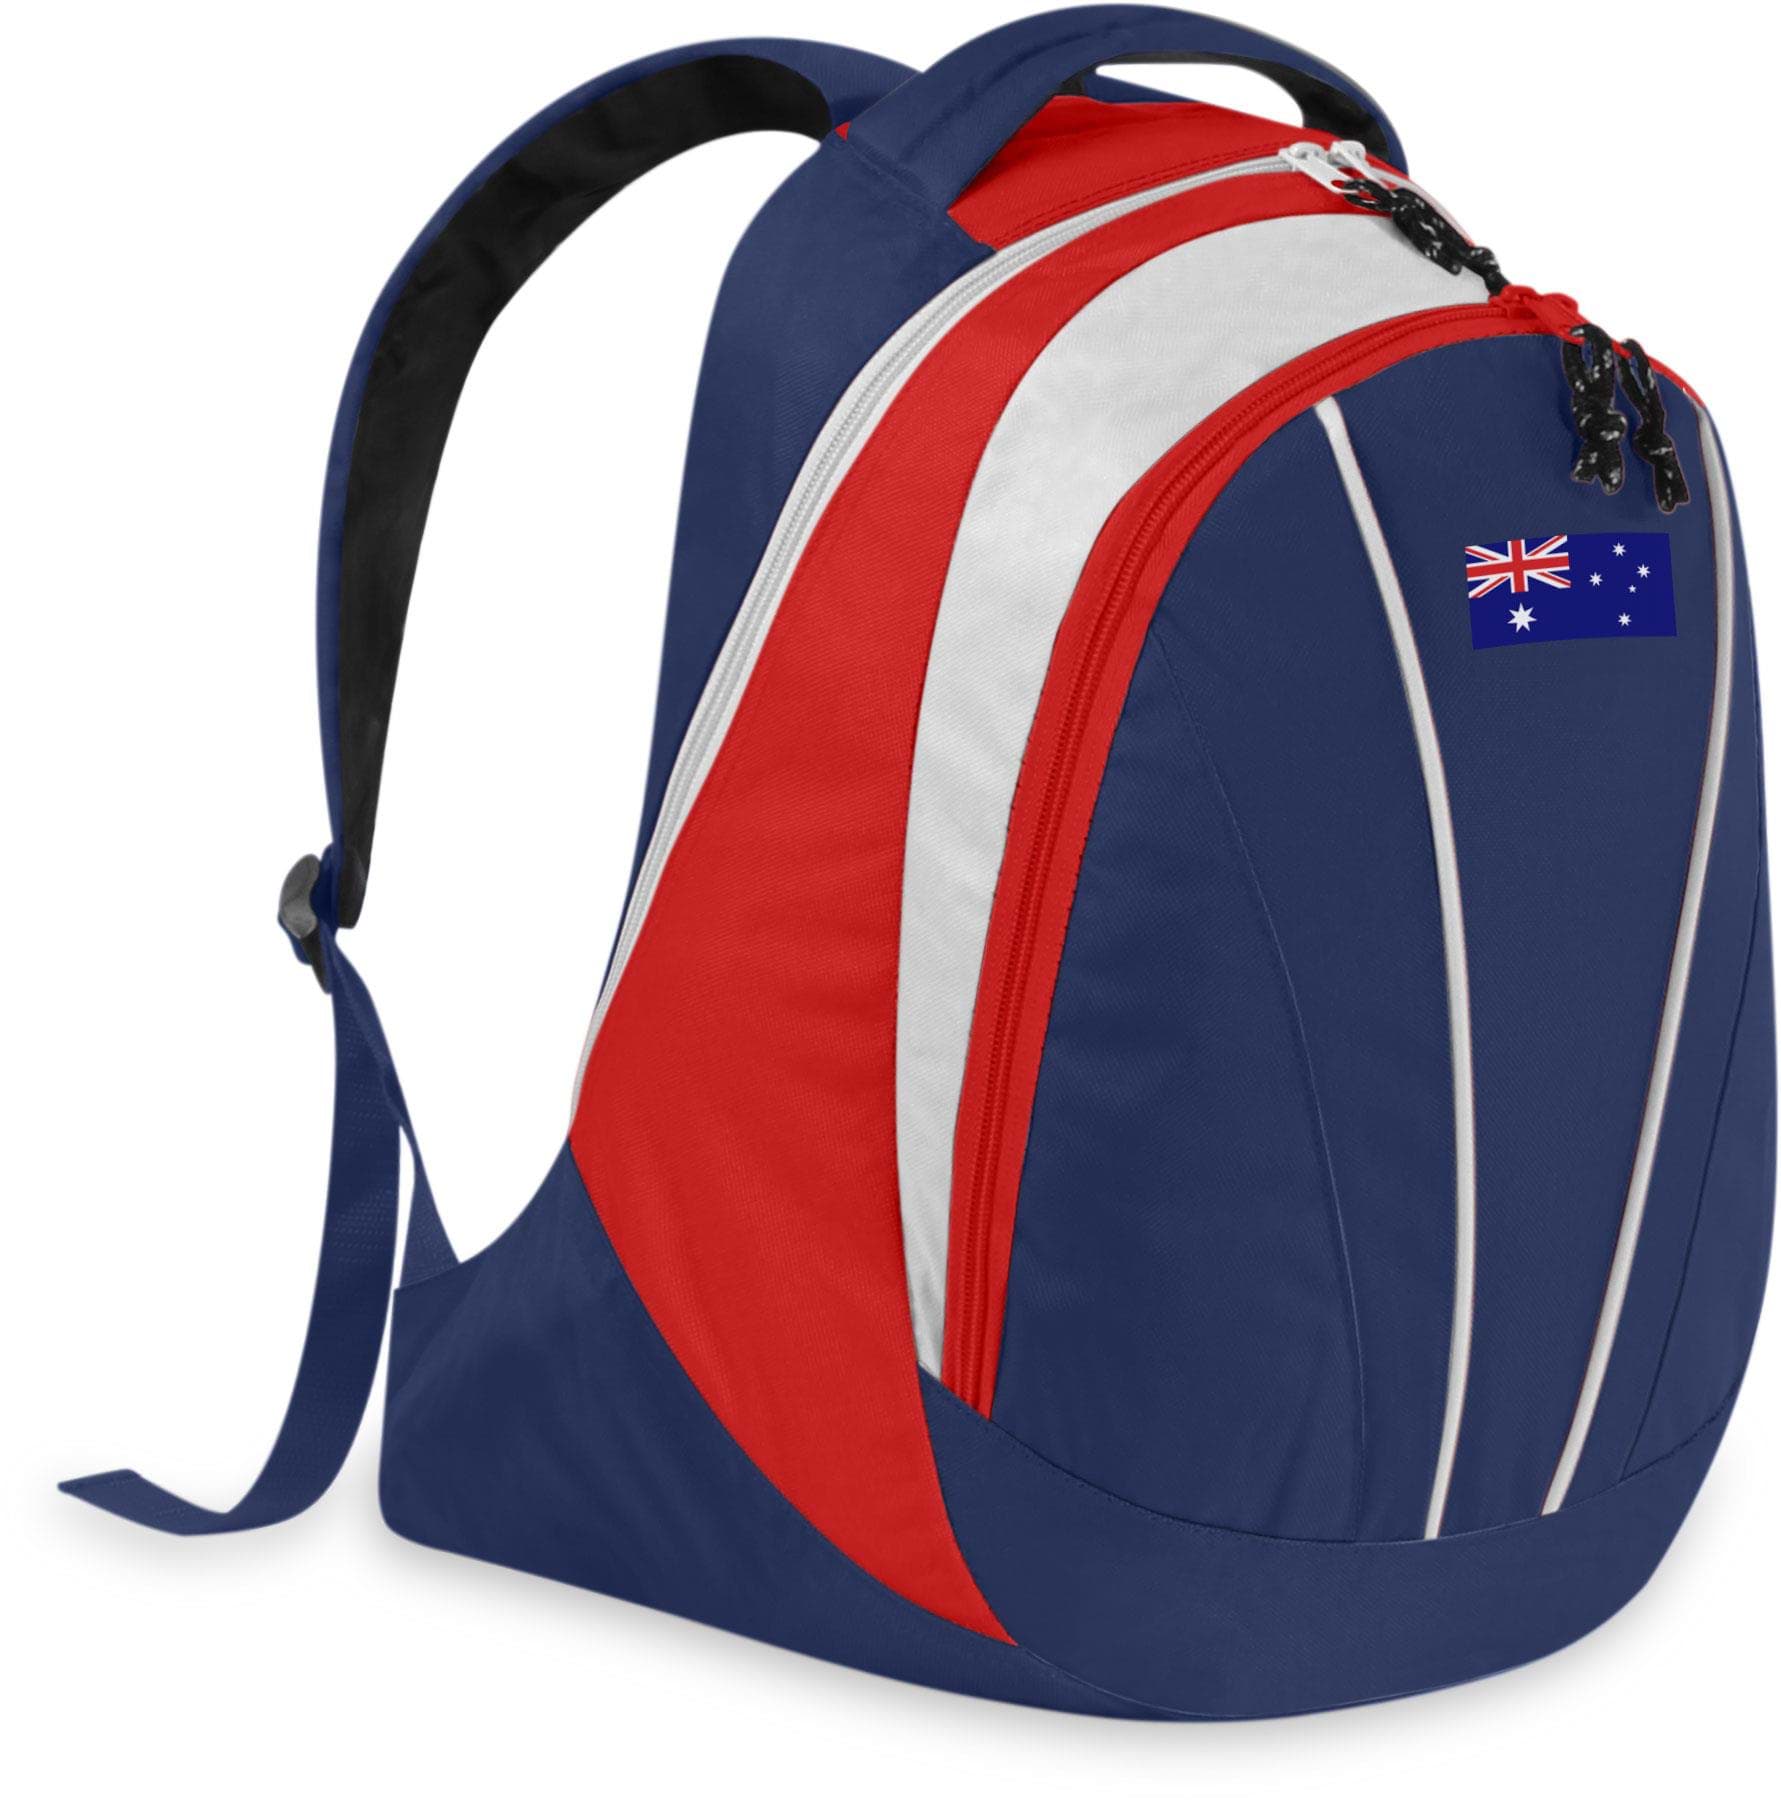 Bild von Fan-Rucksack mit Länderflagge Australien